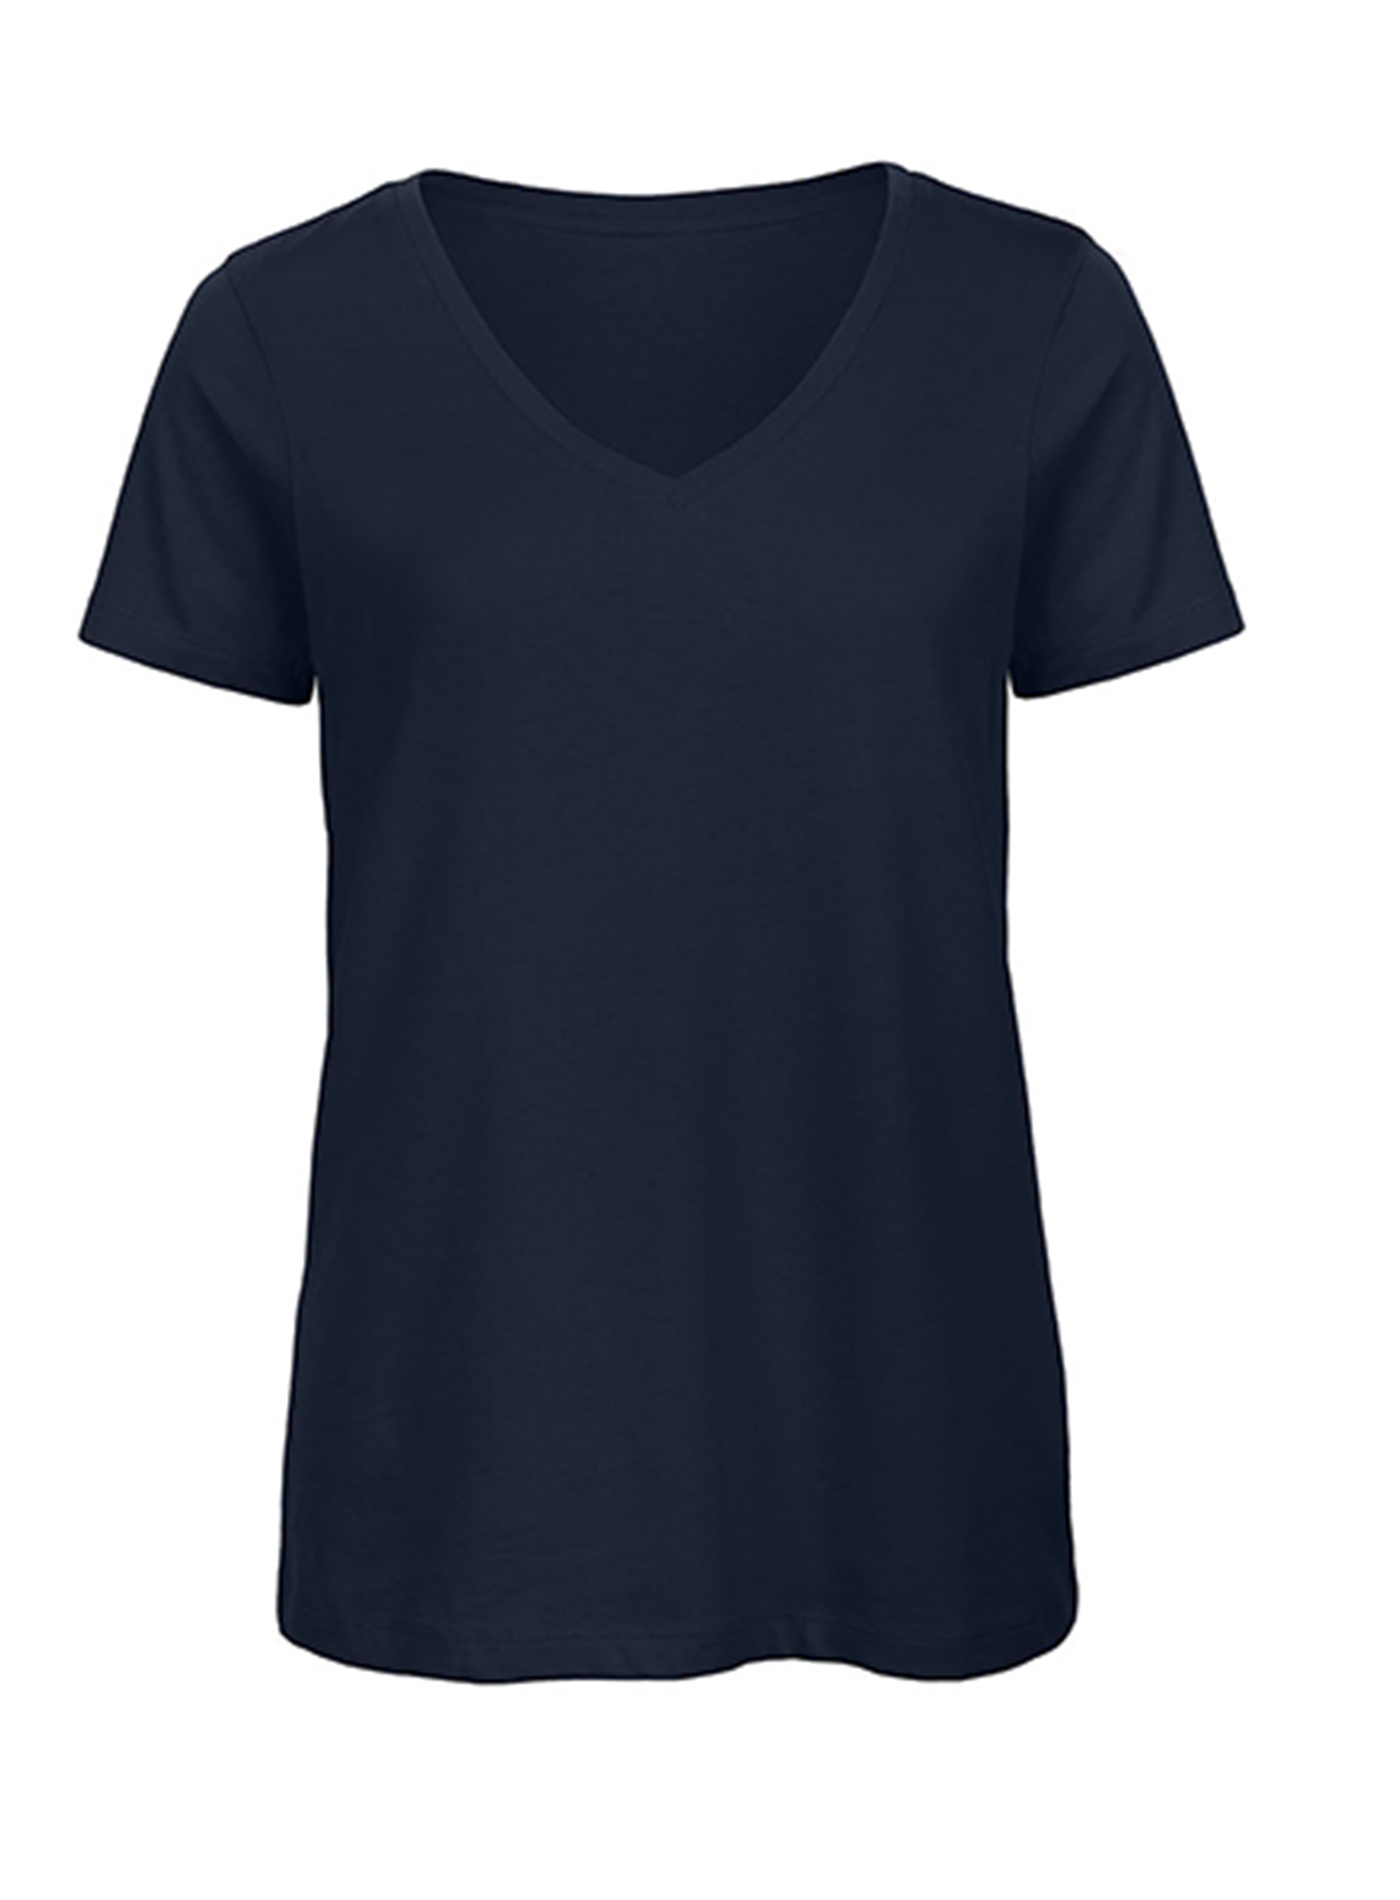 Dámské tričko s výstřihem do V B&C Collection Inspire - Námořnická modrá XXL